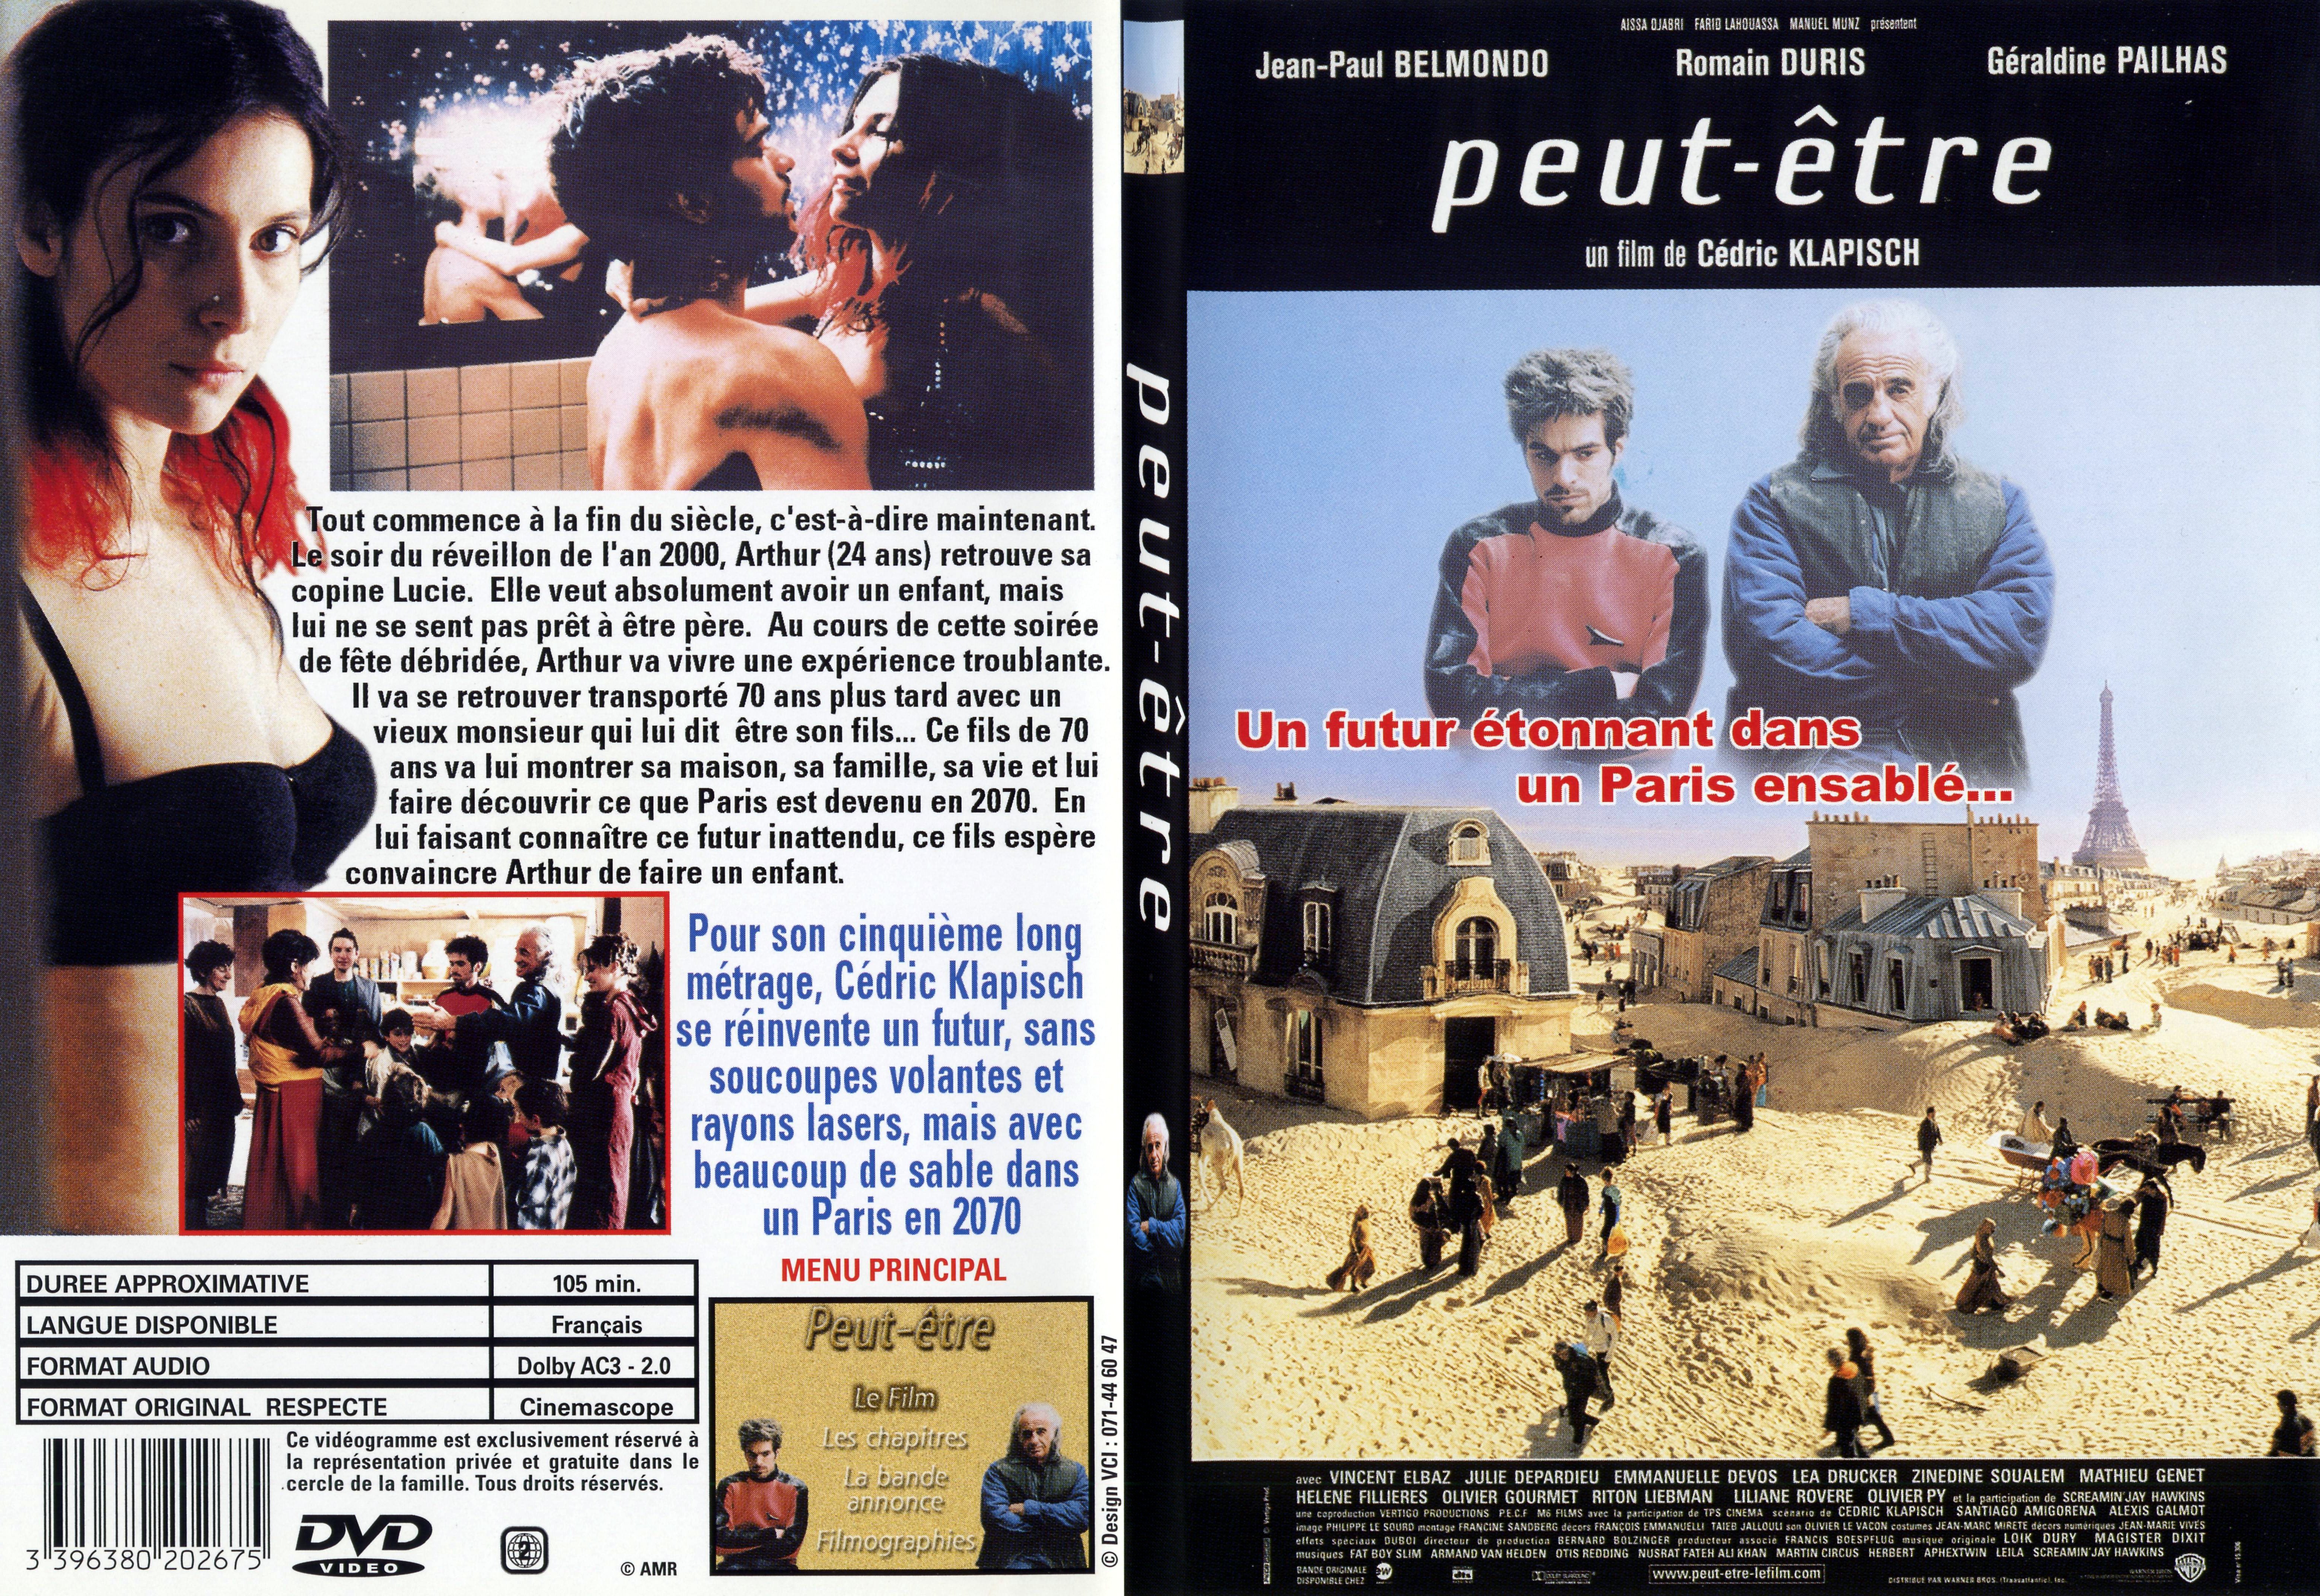 Jaquette DVD Peut-etre - SLIM v2